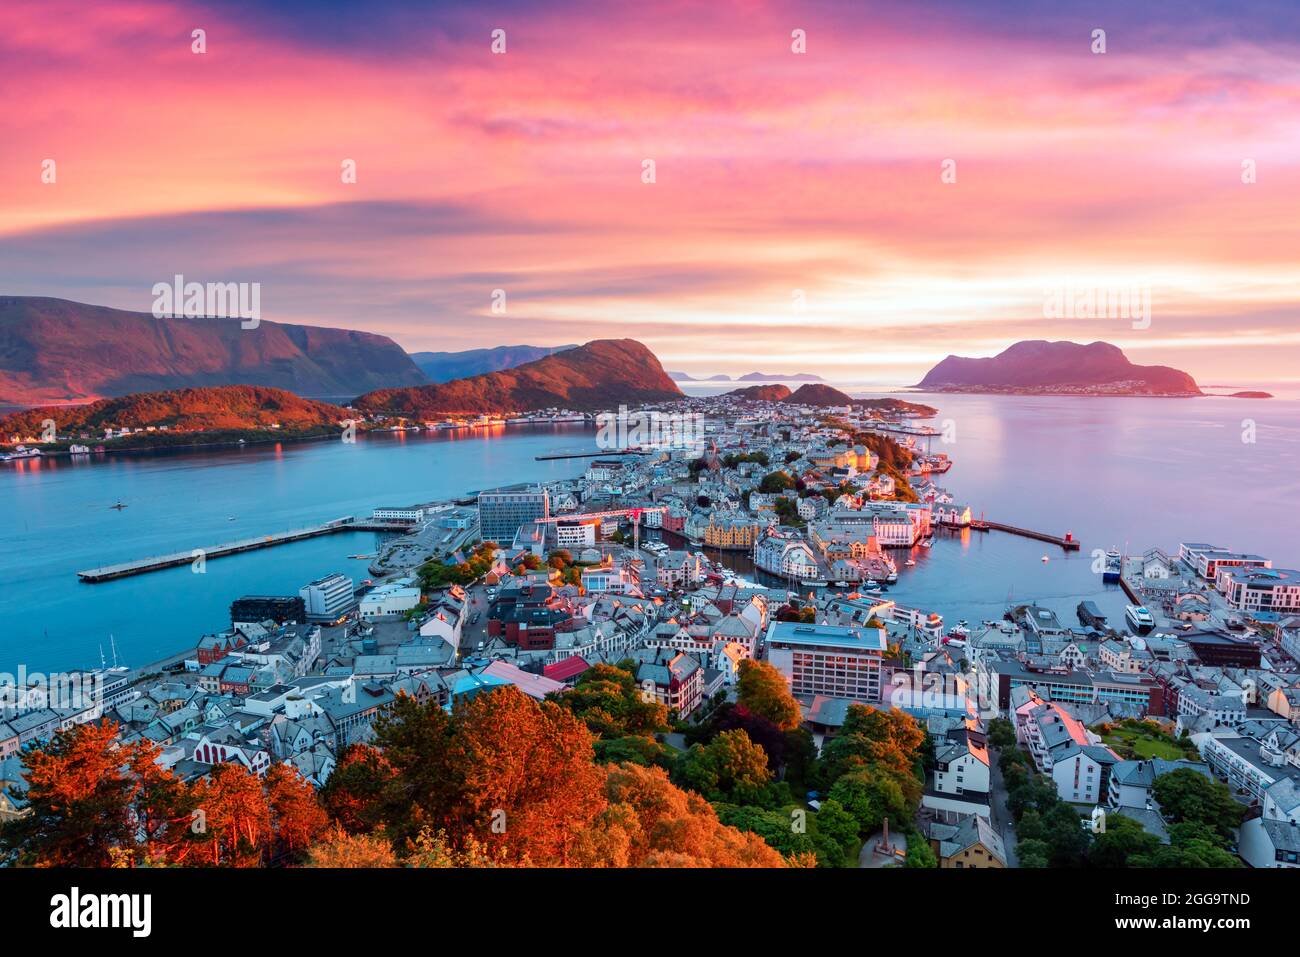 Coucher de soleil coloré dans la ville portuaire d'Alesund sur la côte ouest de la Norvège. Endroit où l'océan rencontre les montagnes. Photographie de paysage Banque D'Images